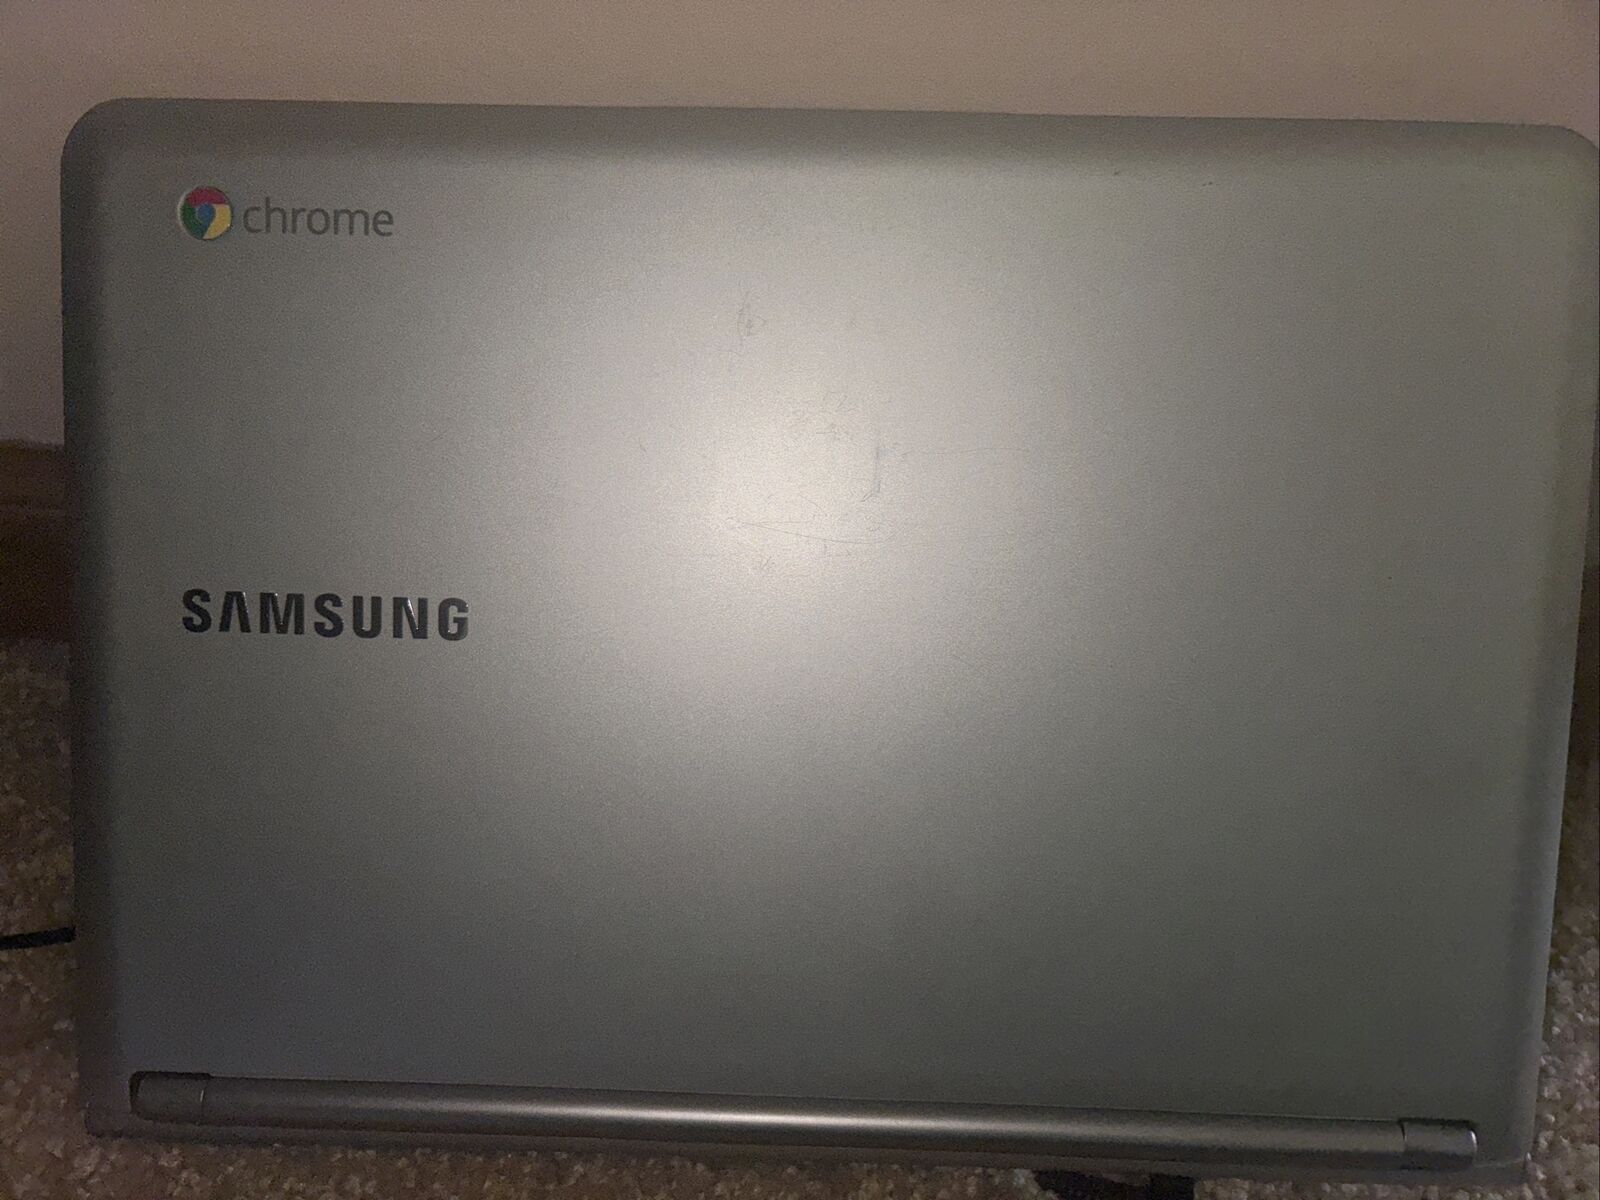 Samsung Chromebook 3G XE303C12 11.6in. (16GB, Samsung Exynos 5 Dual, 1.7GHz,...